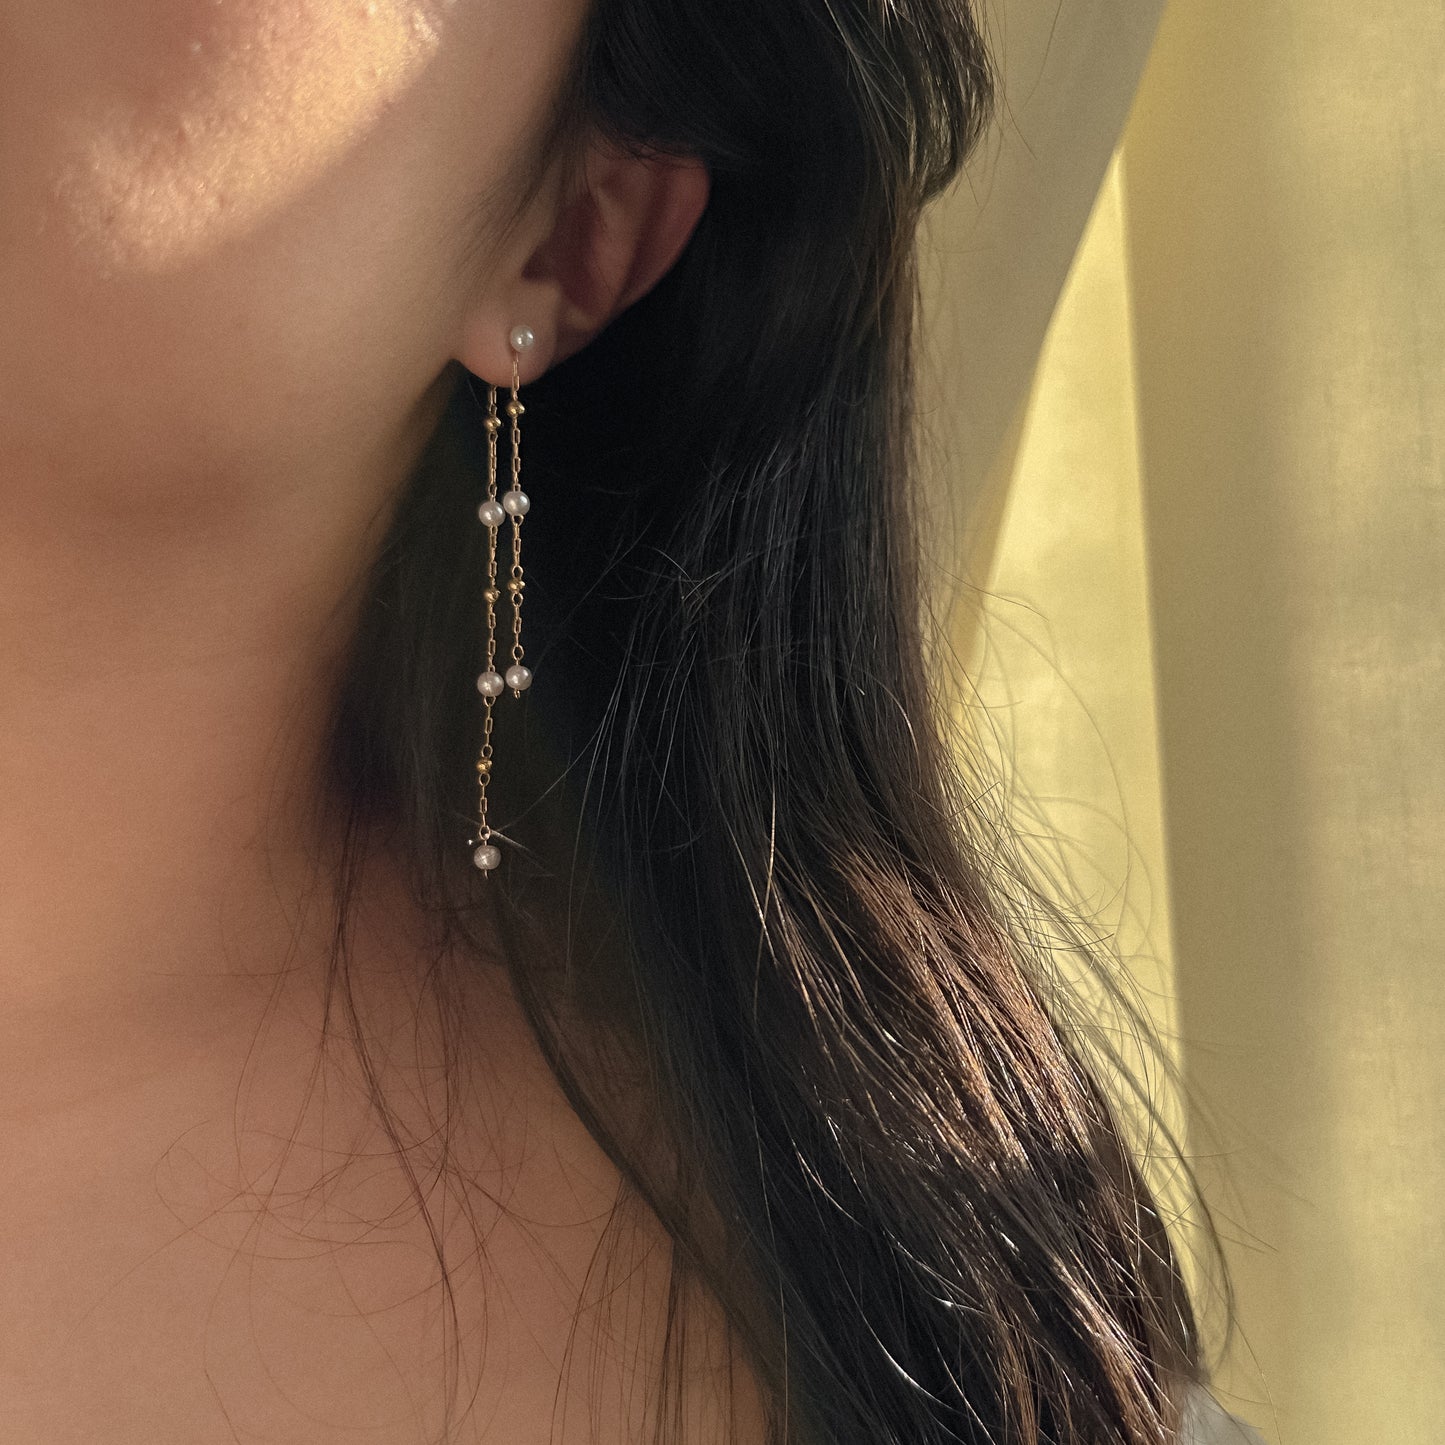 Babe earrings 💖